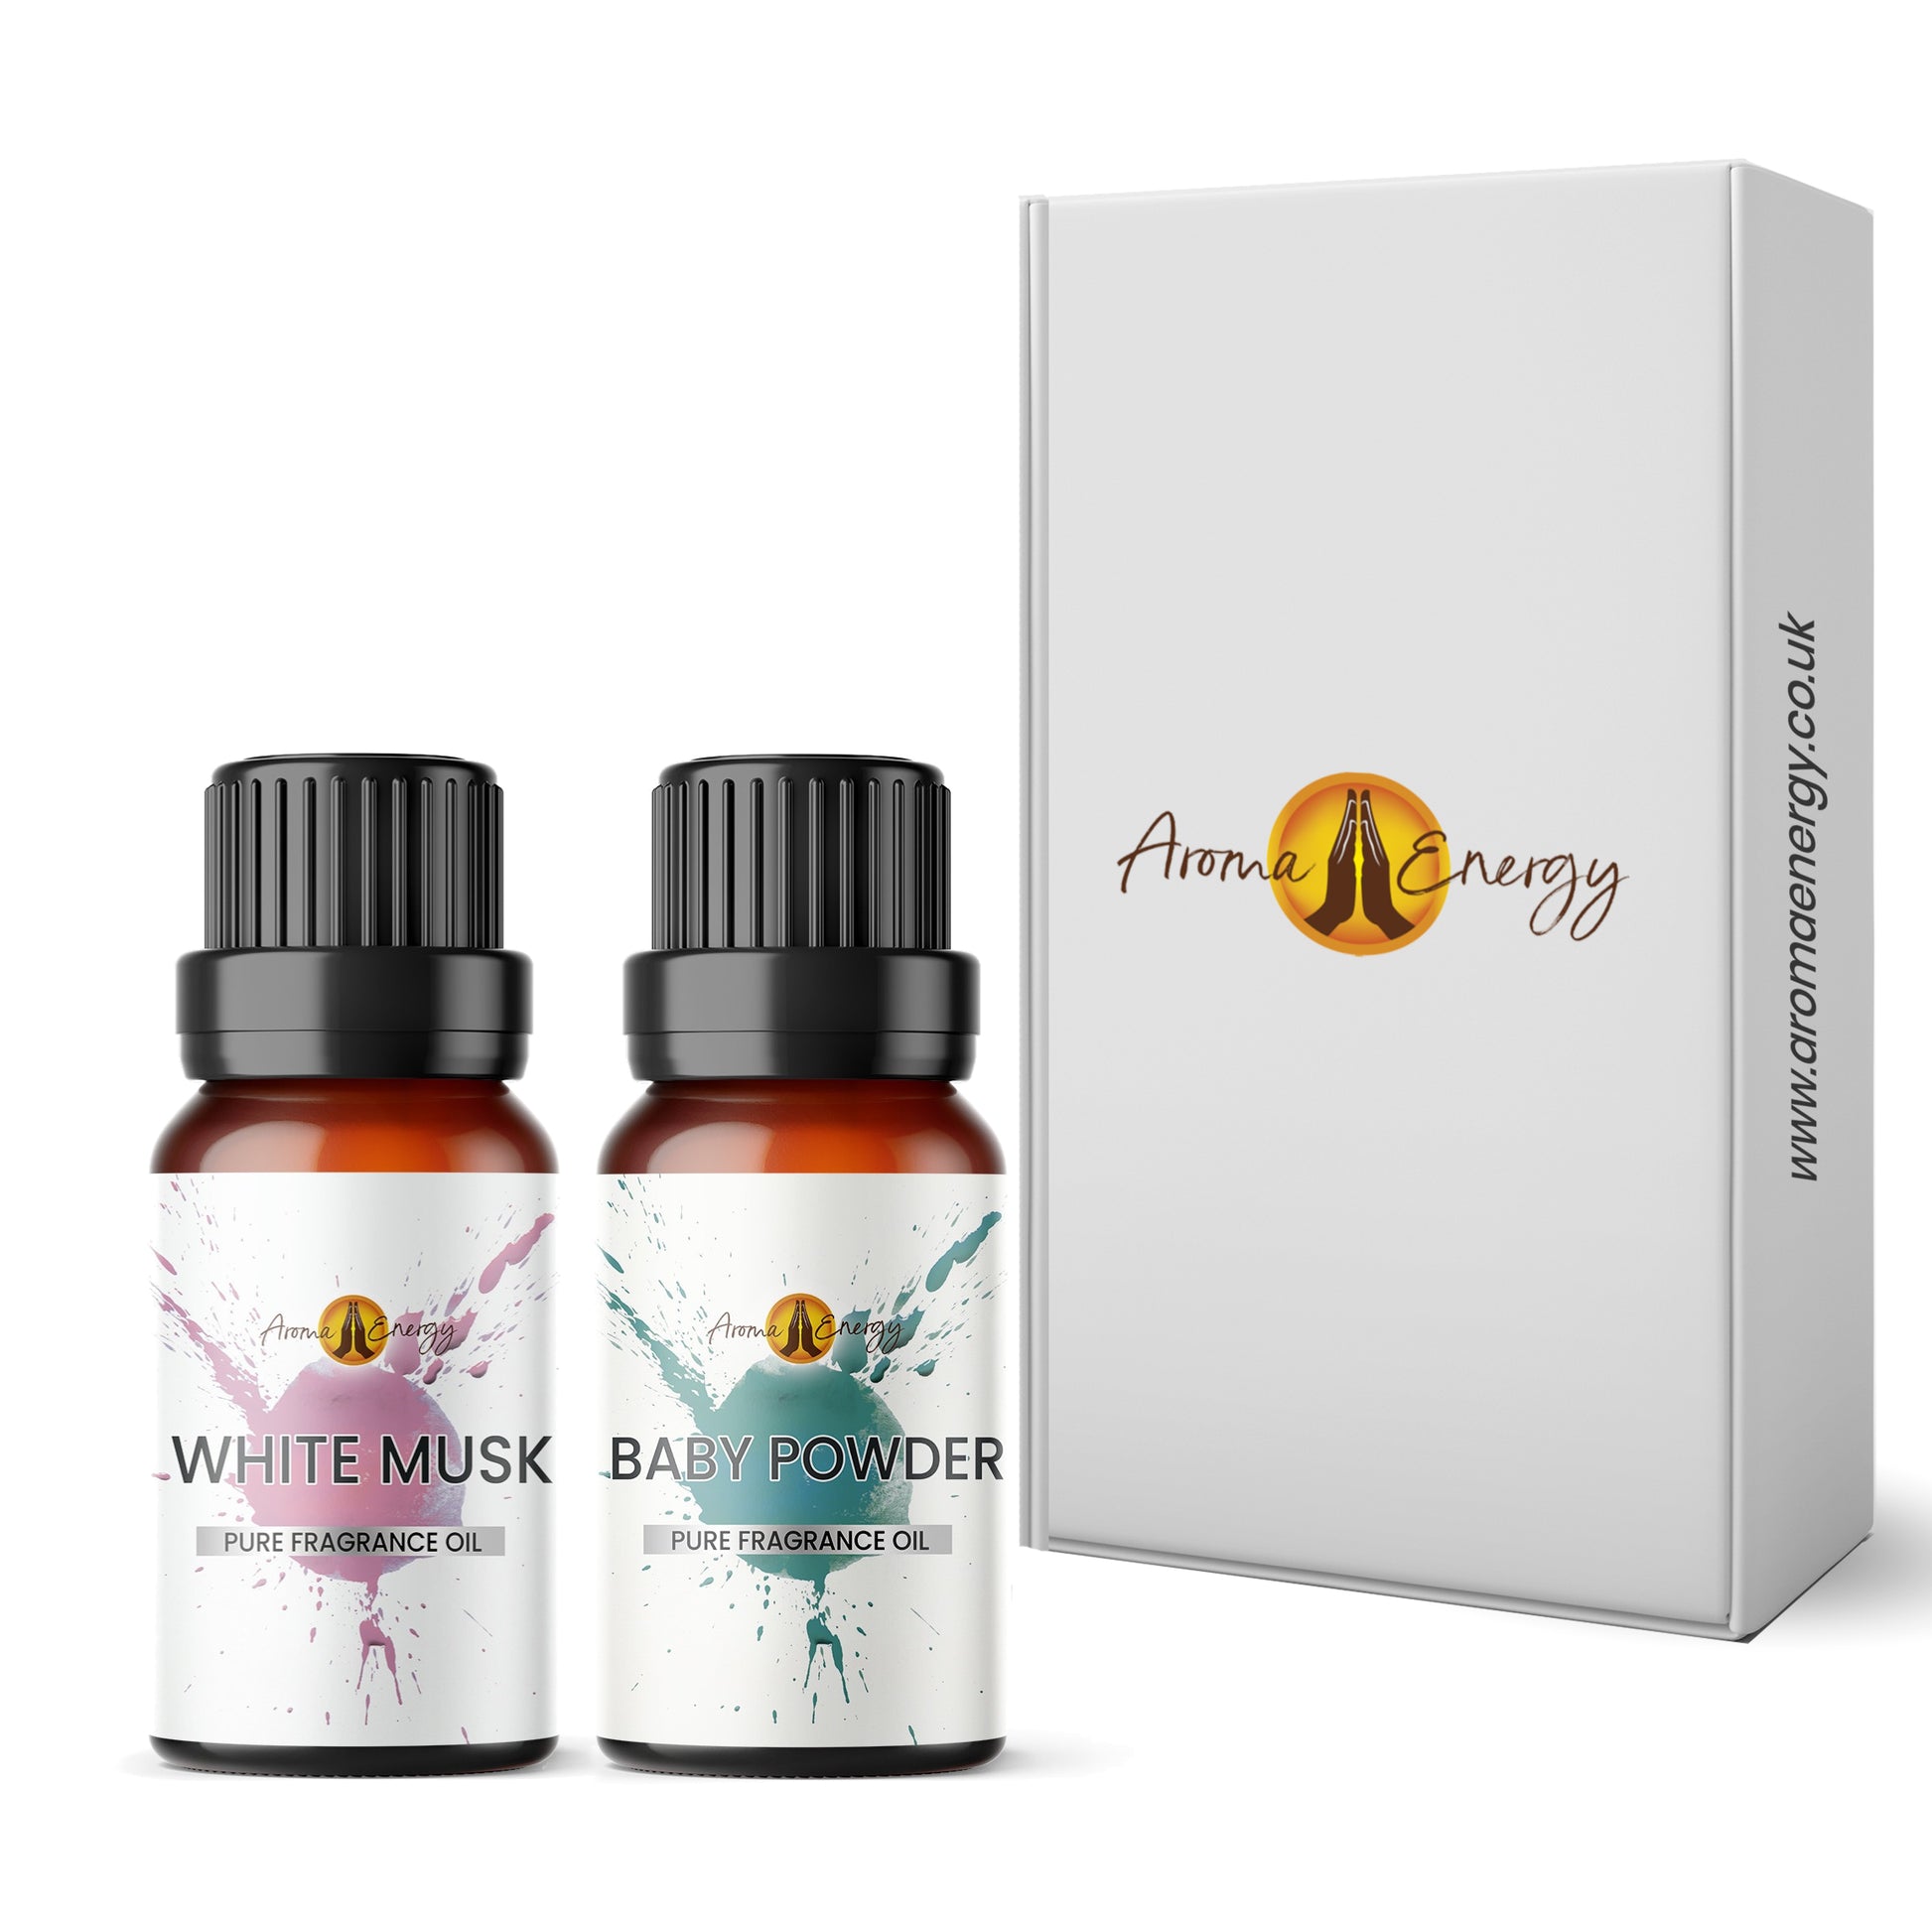 White Musk & Baby Powder Fragrance Oil Gift Box Set - Aroma Energy